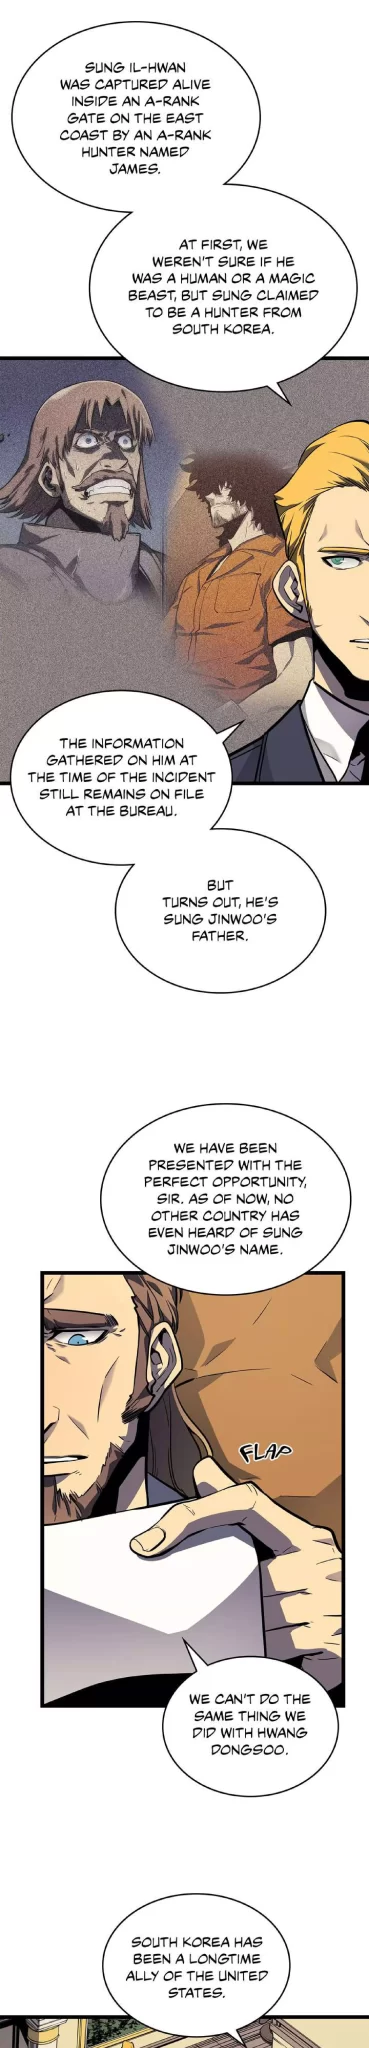 Solo Leveling Manga Manga Chapter - 105 - image 29